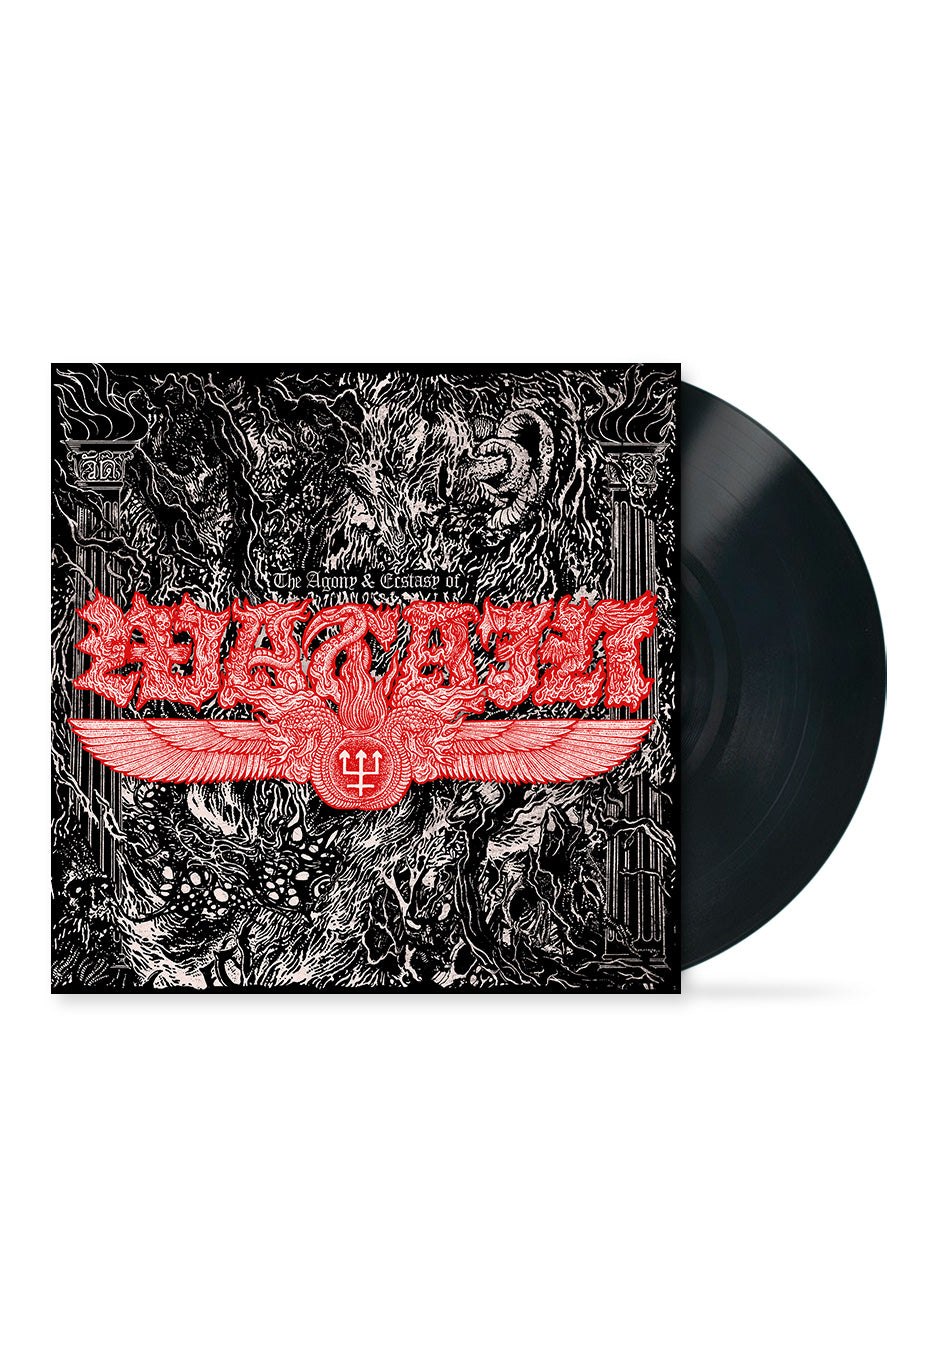 Watain - The Agony & Ecstasy Of Watain - Vinyl